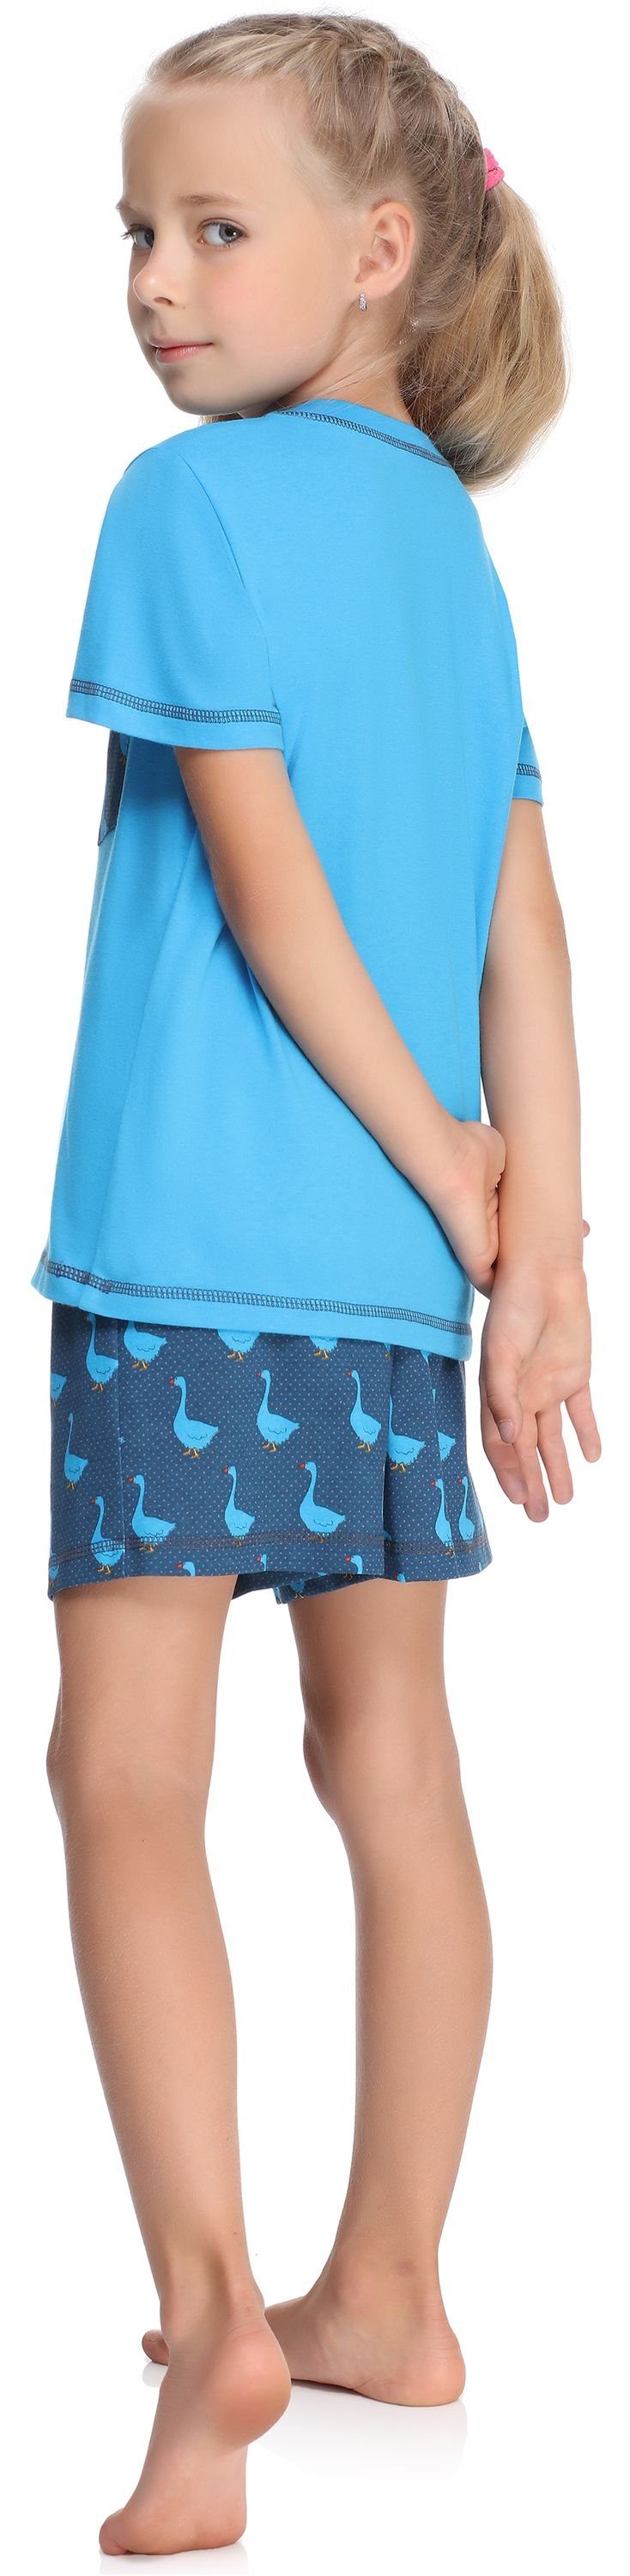 Merry Style Schlafanzug Blau/Gans Mädchen MS10-292 Schlafanzüge Baumwolle Pyjama Kurz Set aus